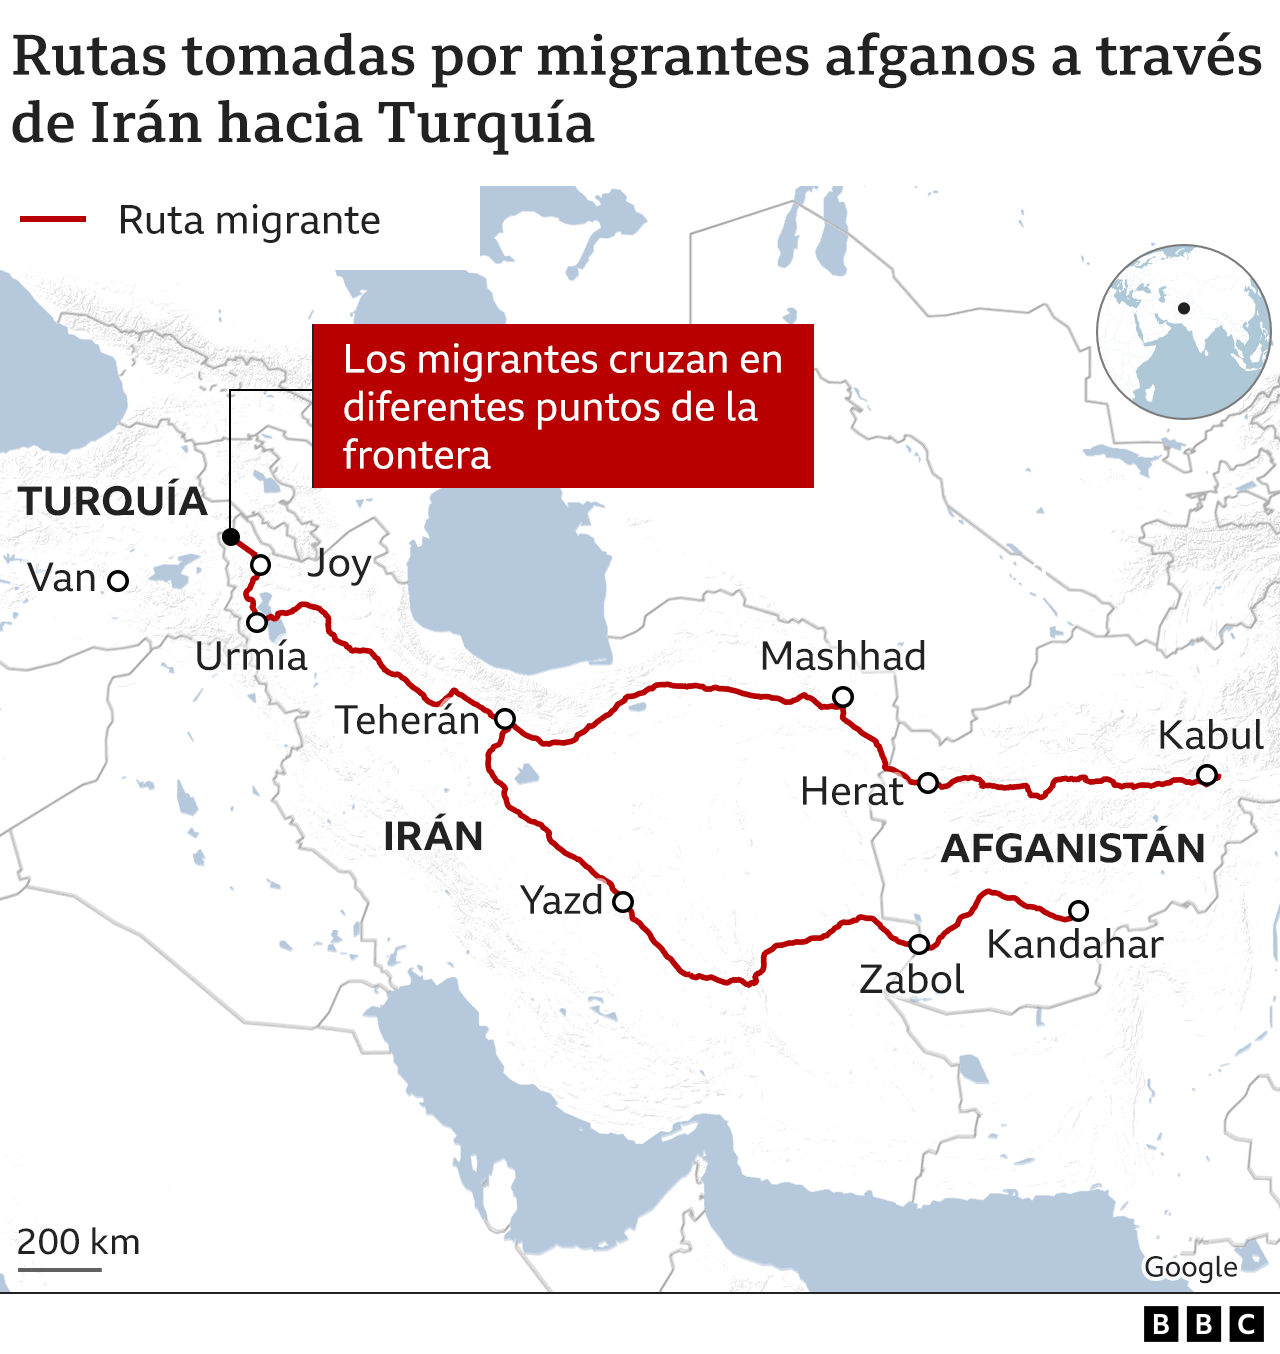 El mapa muestra las rutas tomadas por los inmigrantes afganos a través de Irán a Turquía.